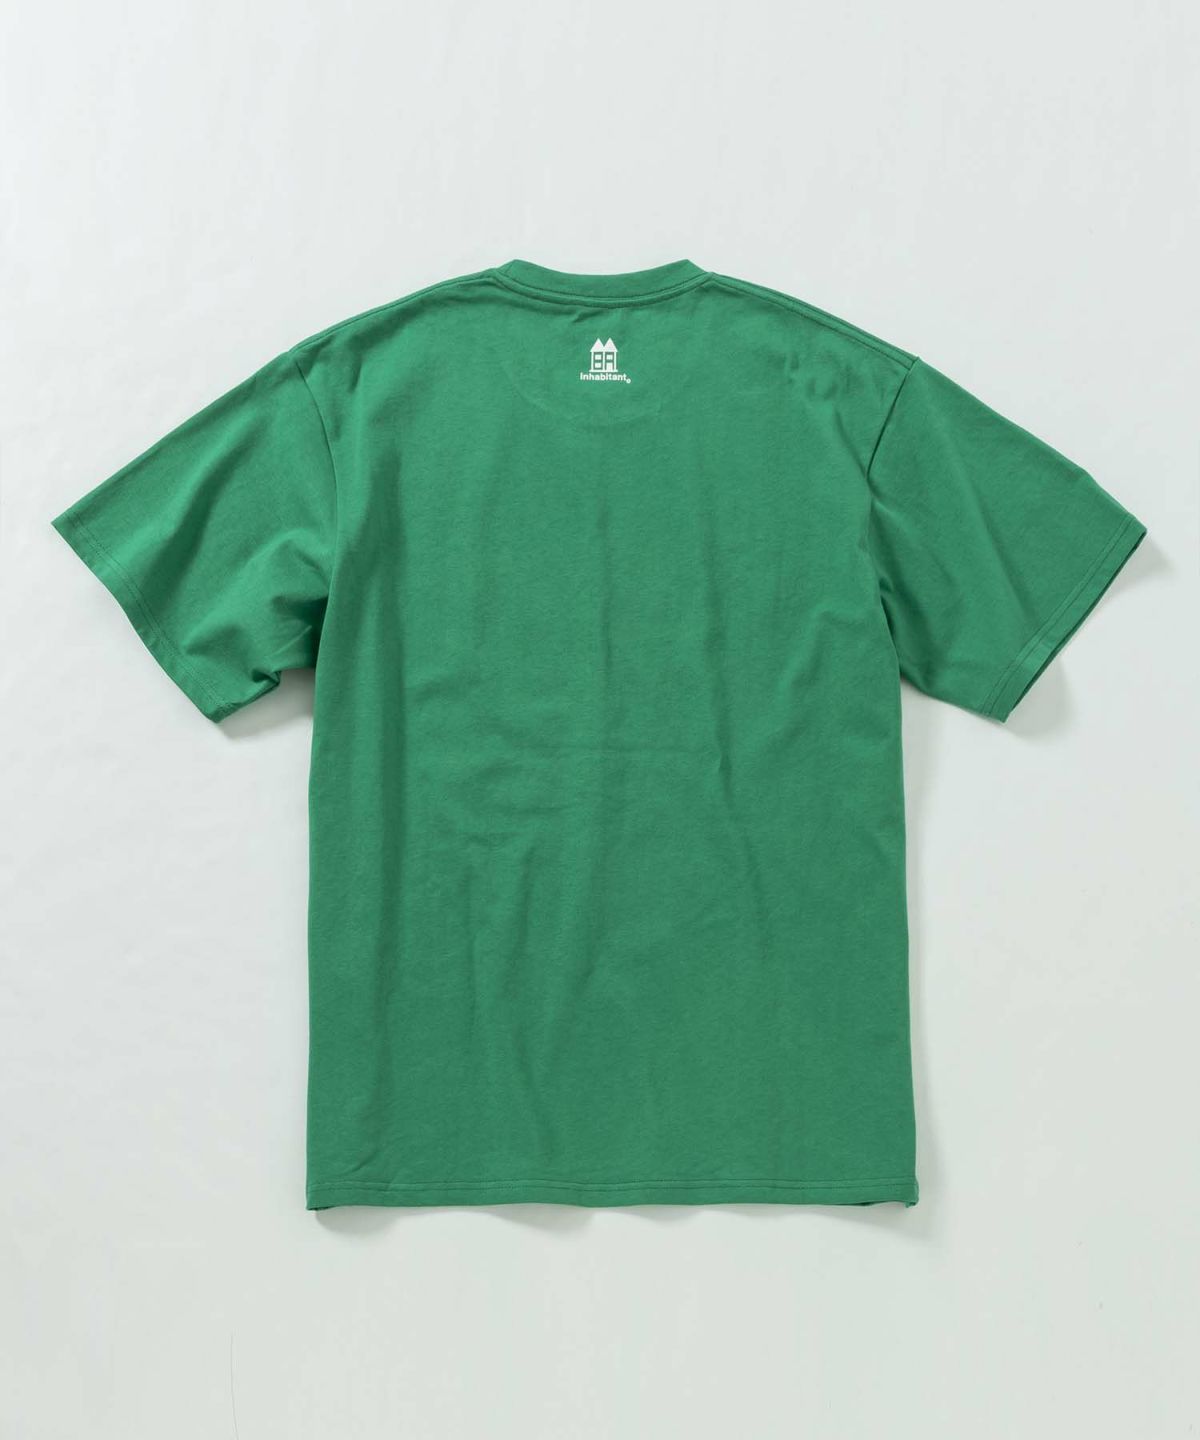 inhabitant(インハビタント)Logo T-shirts/ブルーロゴプリントTシャツ 